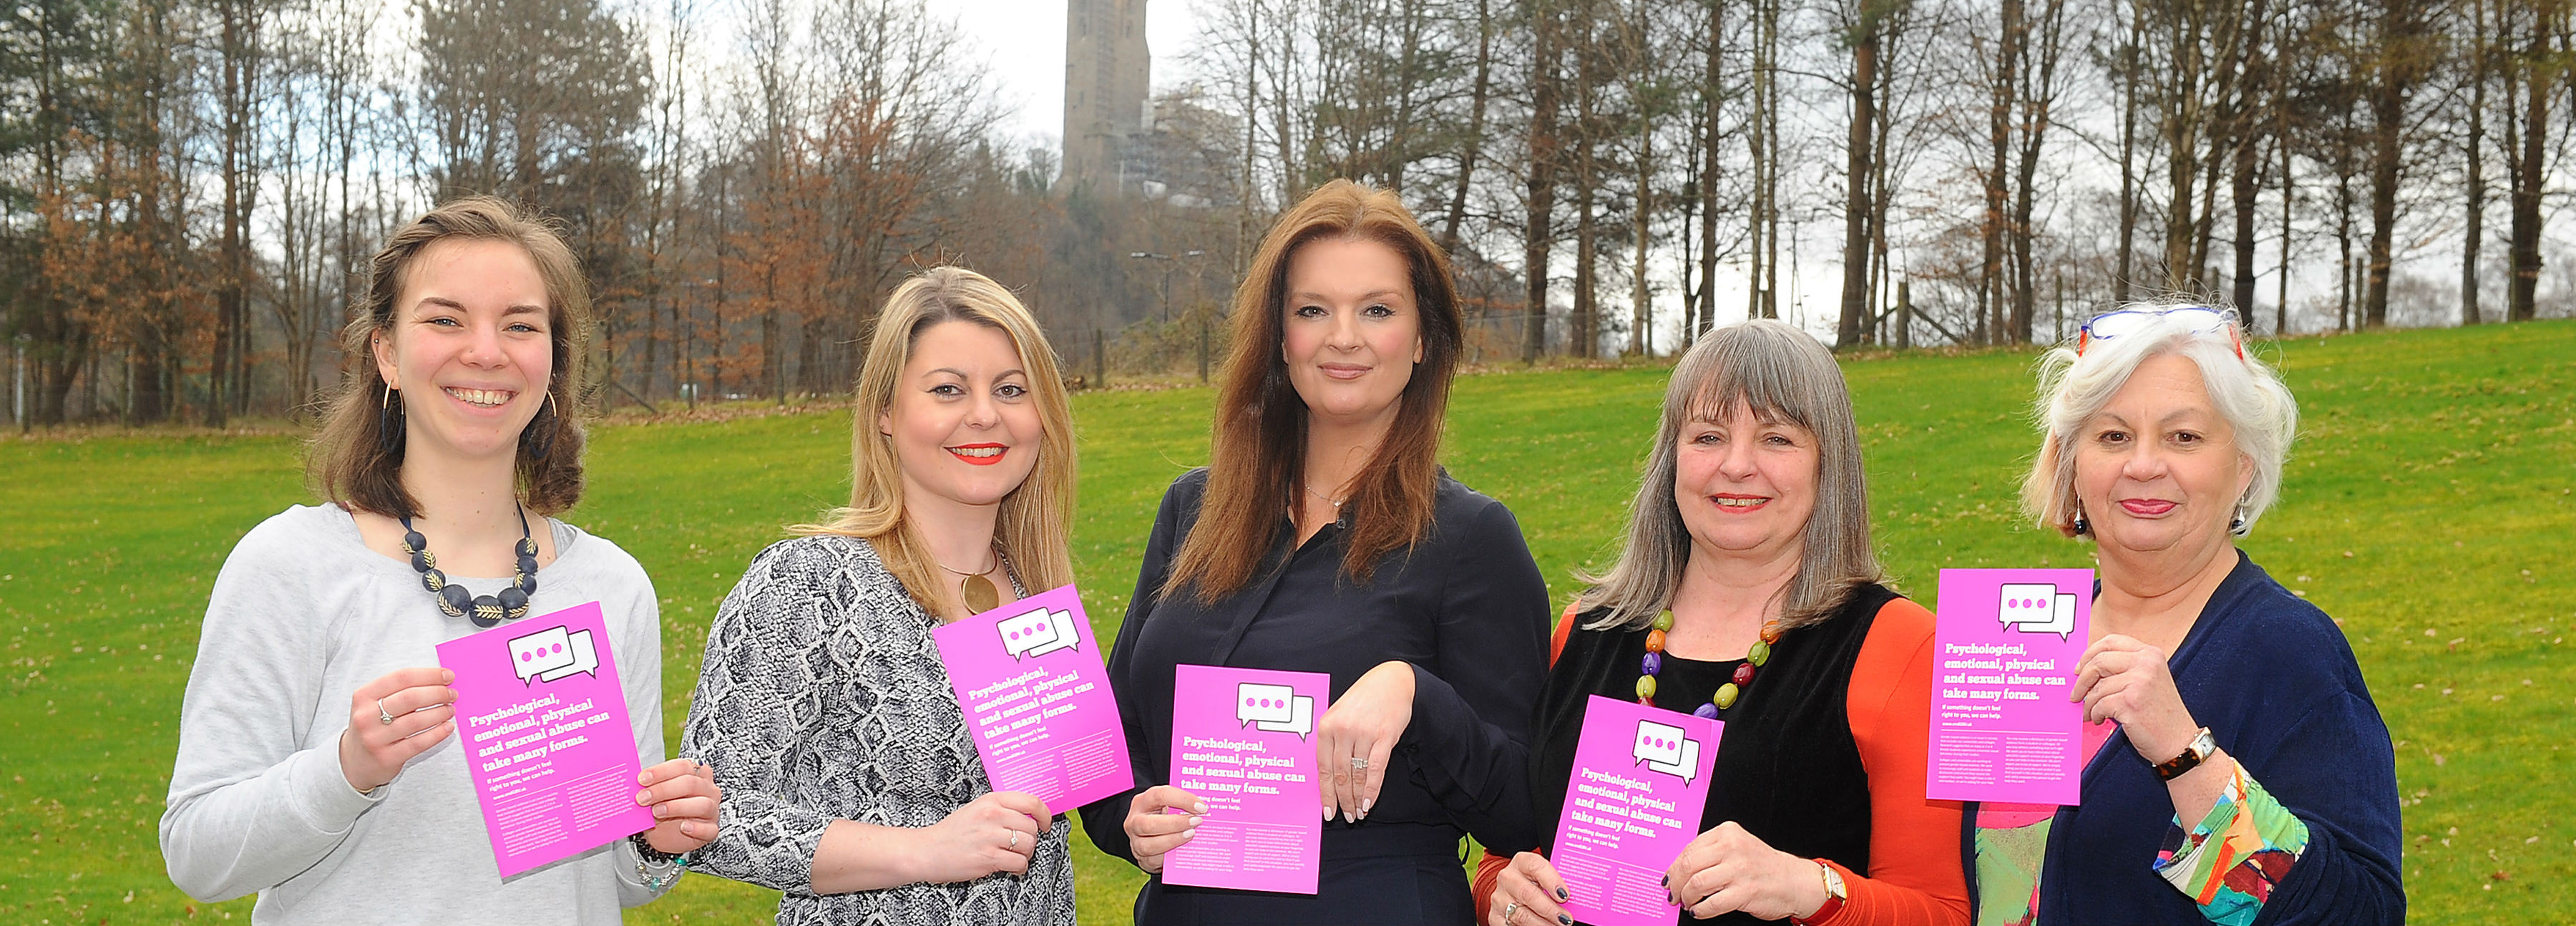 University Event Tackles Gender Based Violence About University Of Stirling